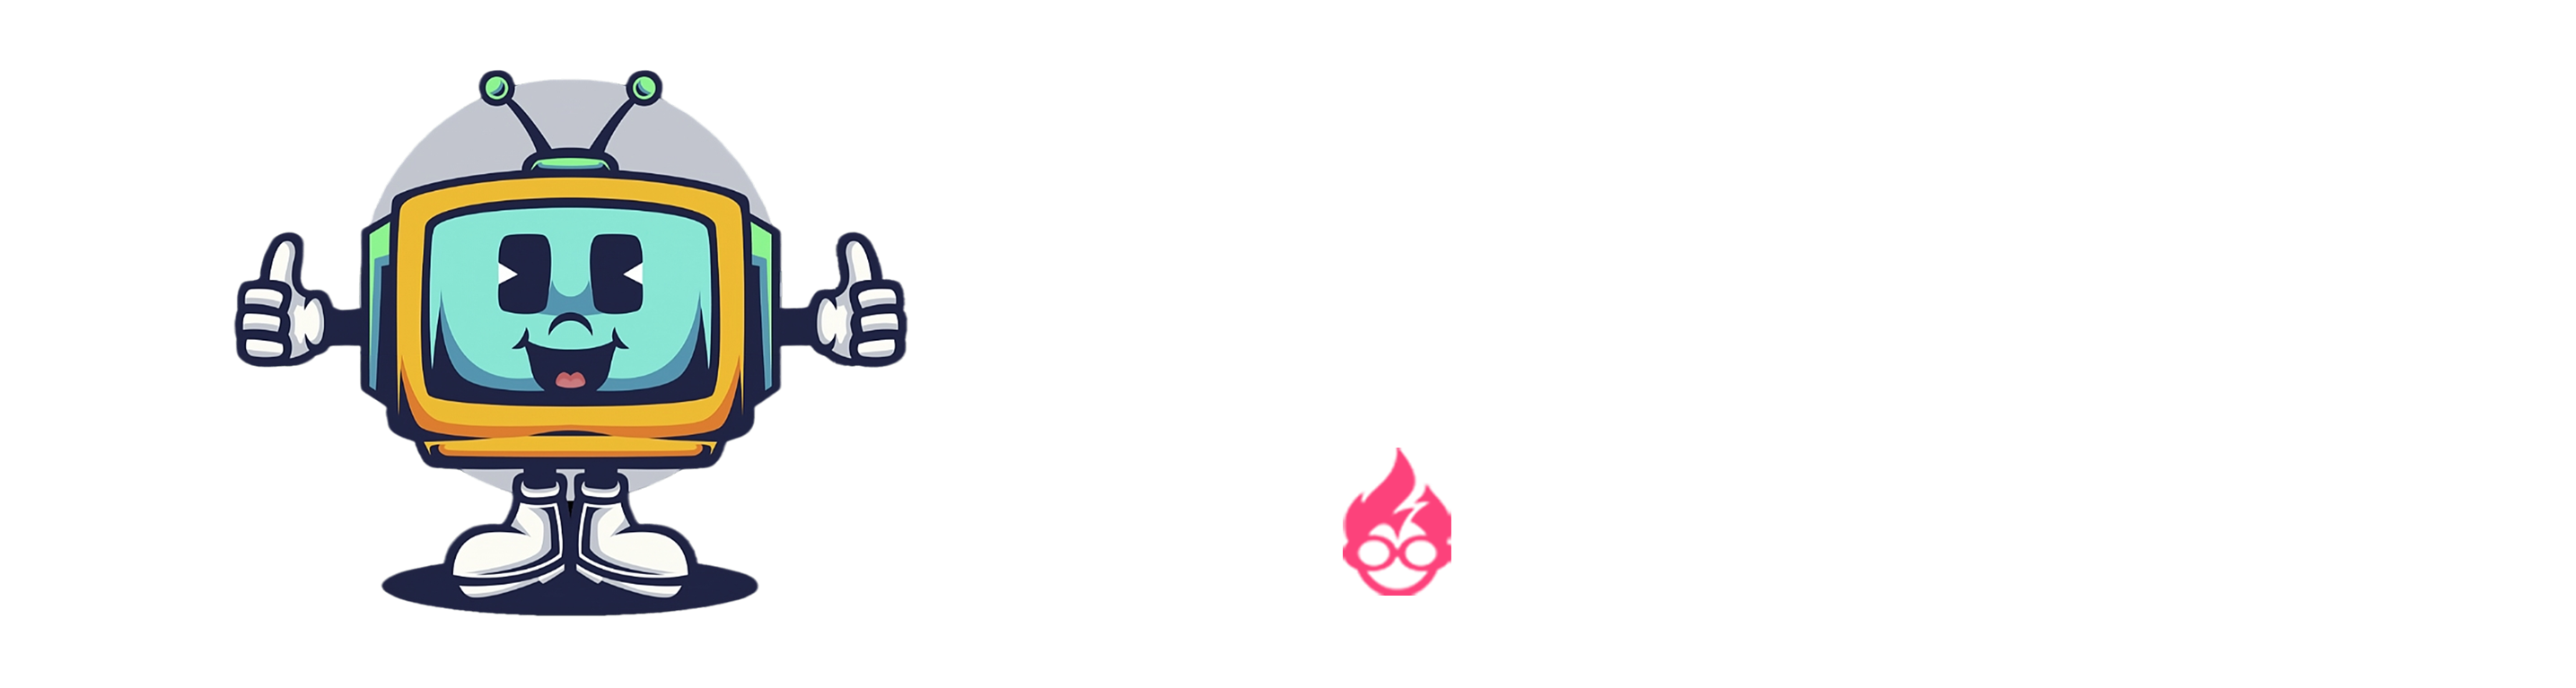 NeoTV - Portal de canales IPTV independiente